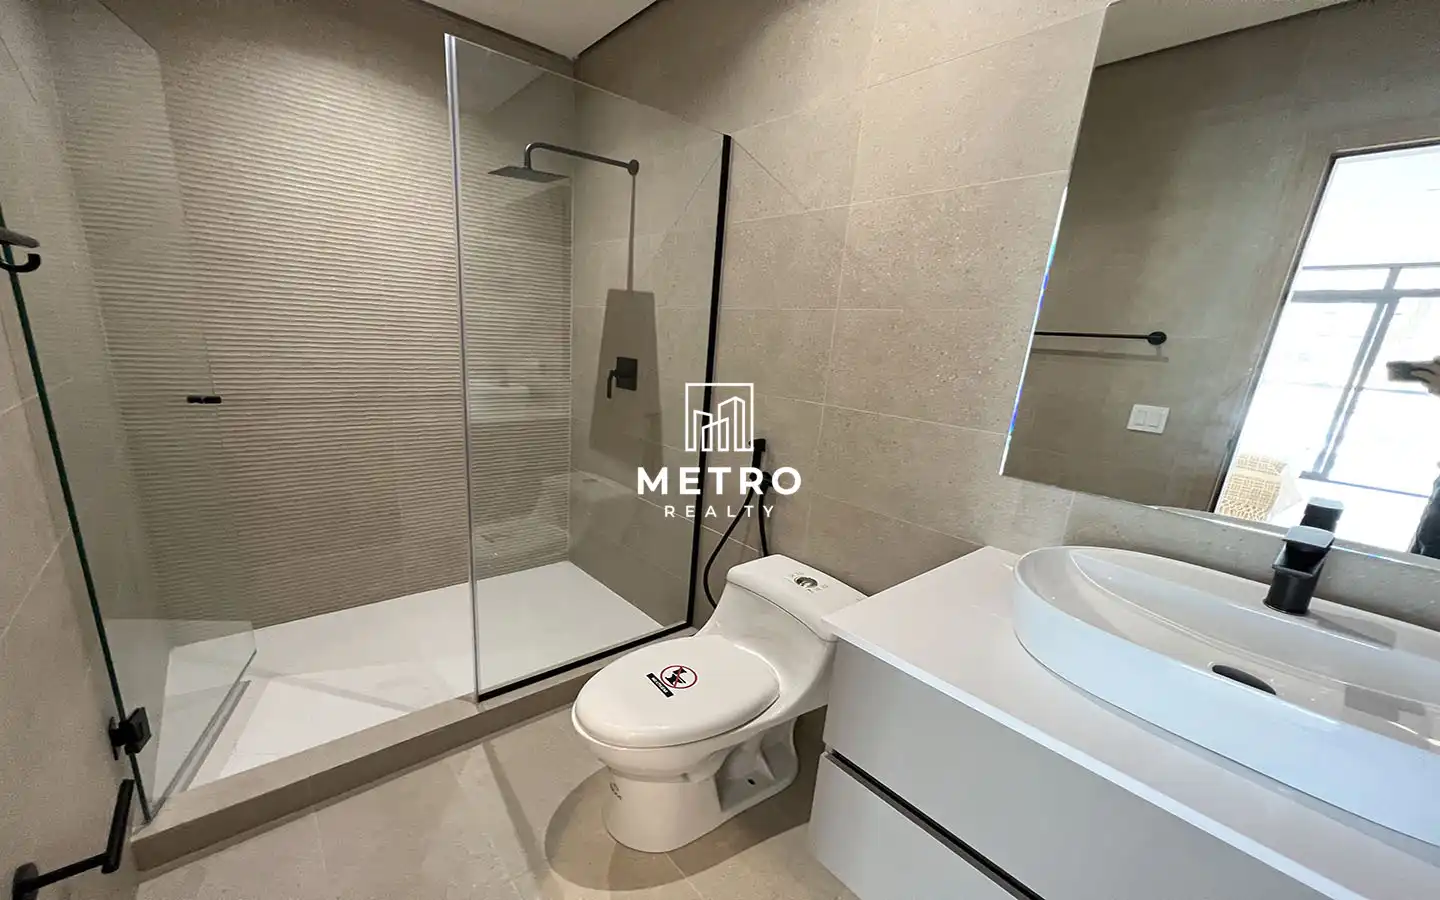 Nogal Panama Pre Construction Condos Costa del Este bathroom mirror, toilet, and shower view